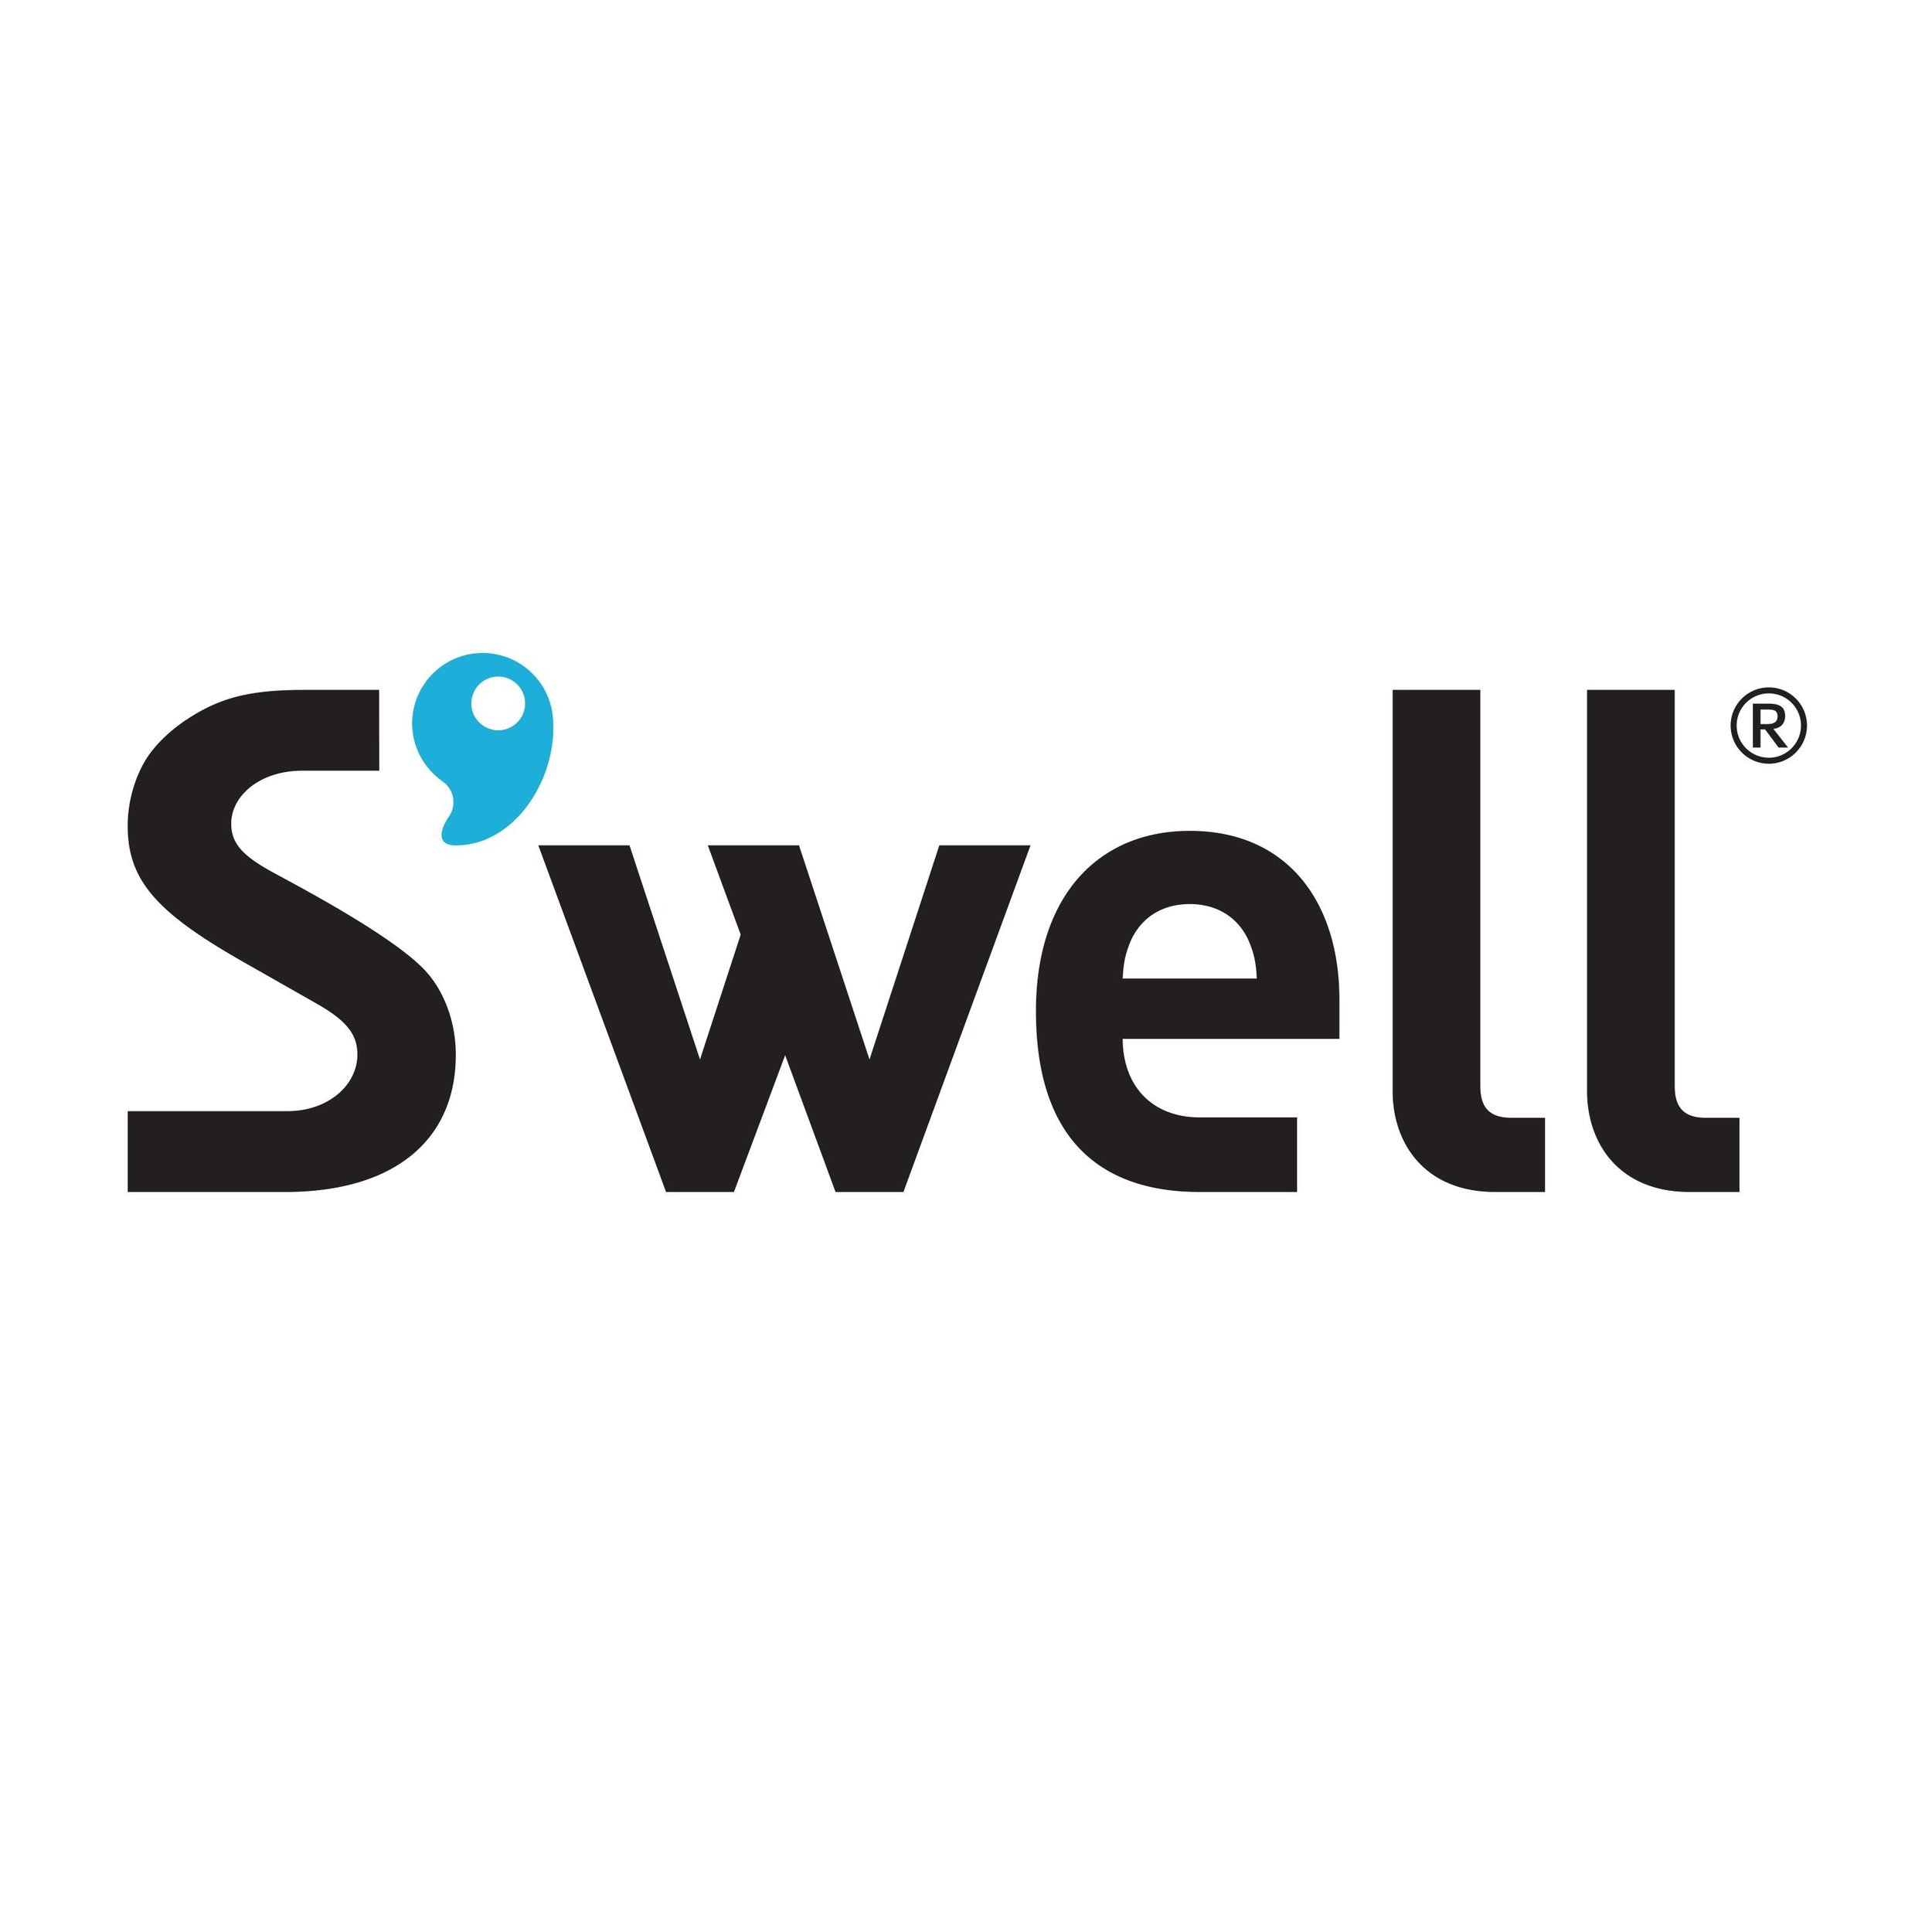 s'well logo.jpg